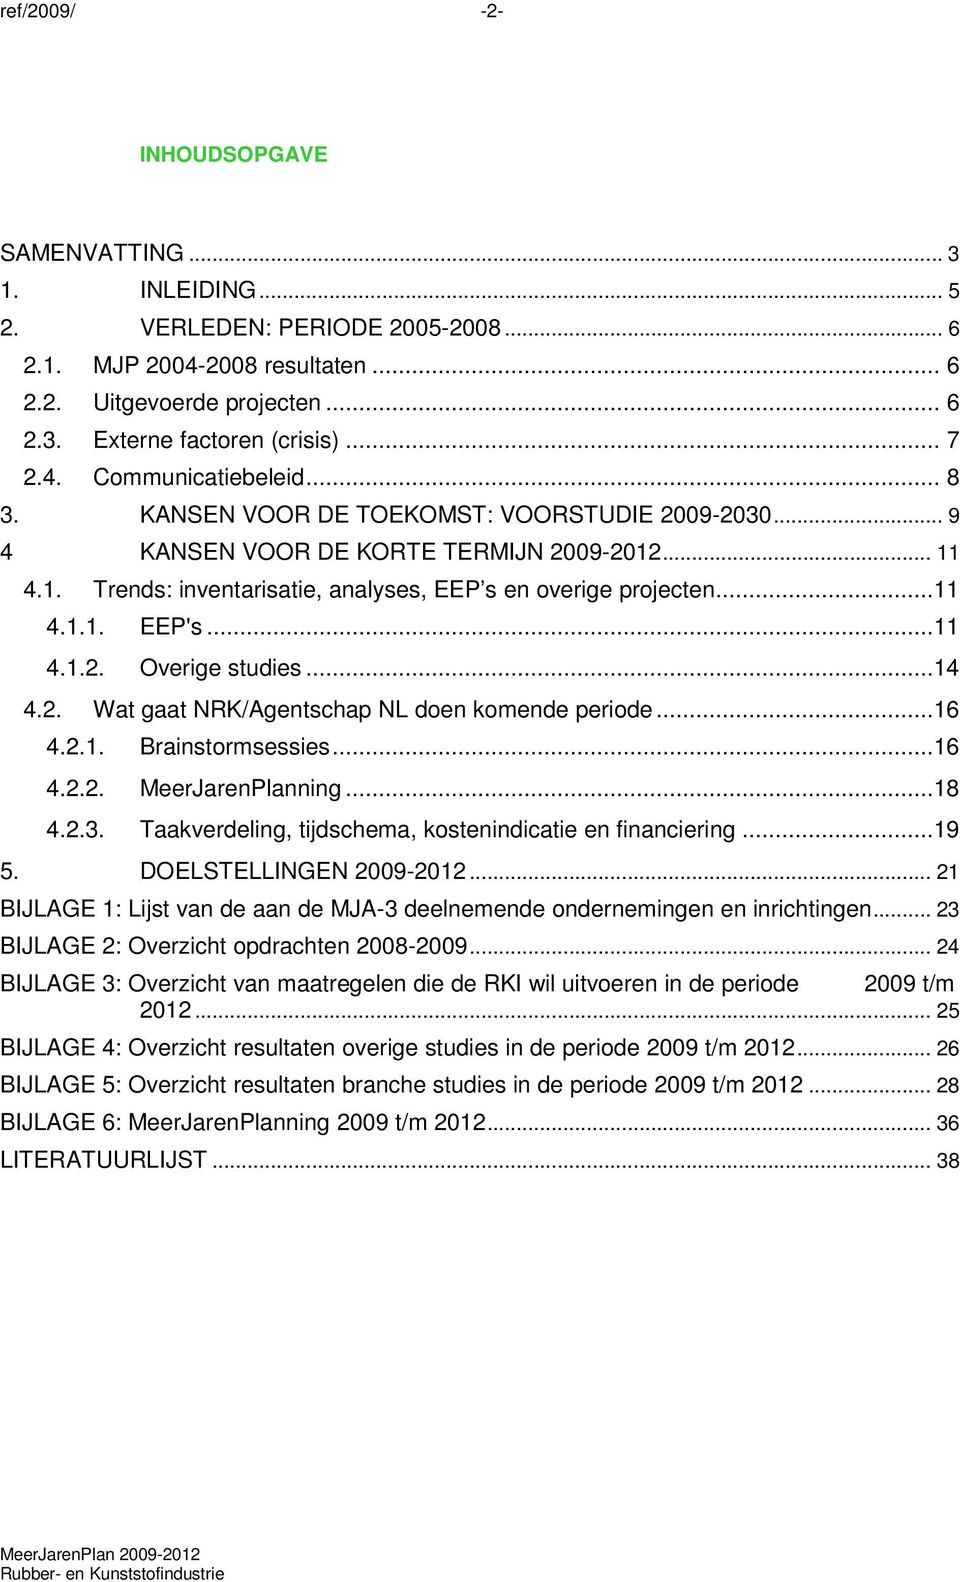 ..11 4.1.1. EEP's...11 4.1.2. Overige studies...14 4.2. Wat gaat NRK/Agentschap NL doen komende periode...16 4.2.1. Brainstormsessies...16 4.2.2. MeerJarenPlanning...18 4.2.3.